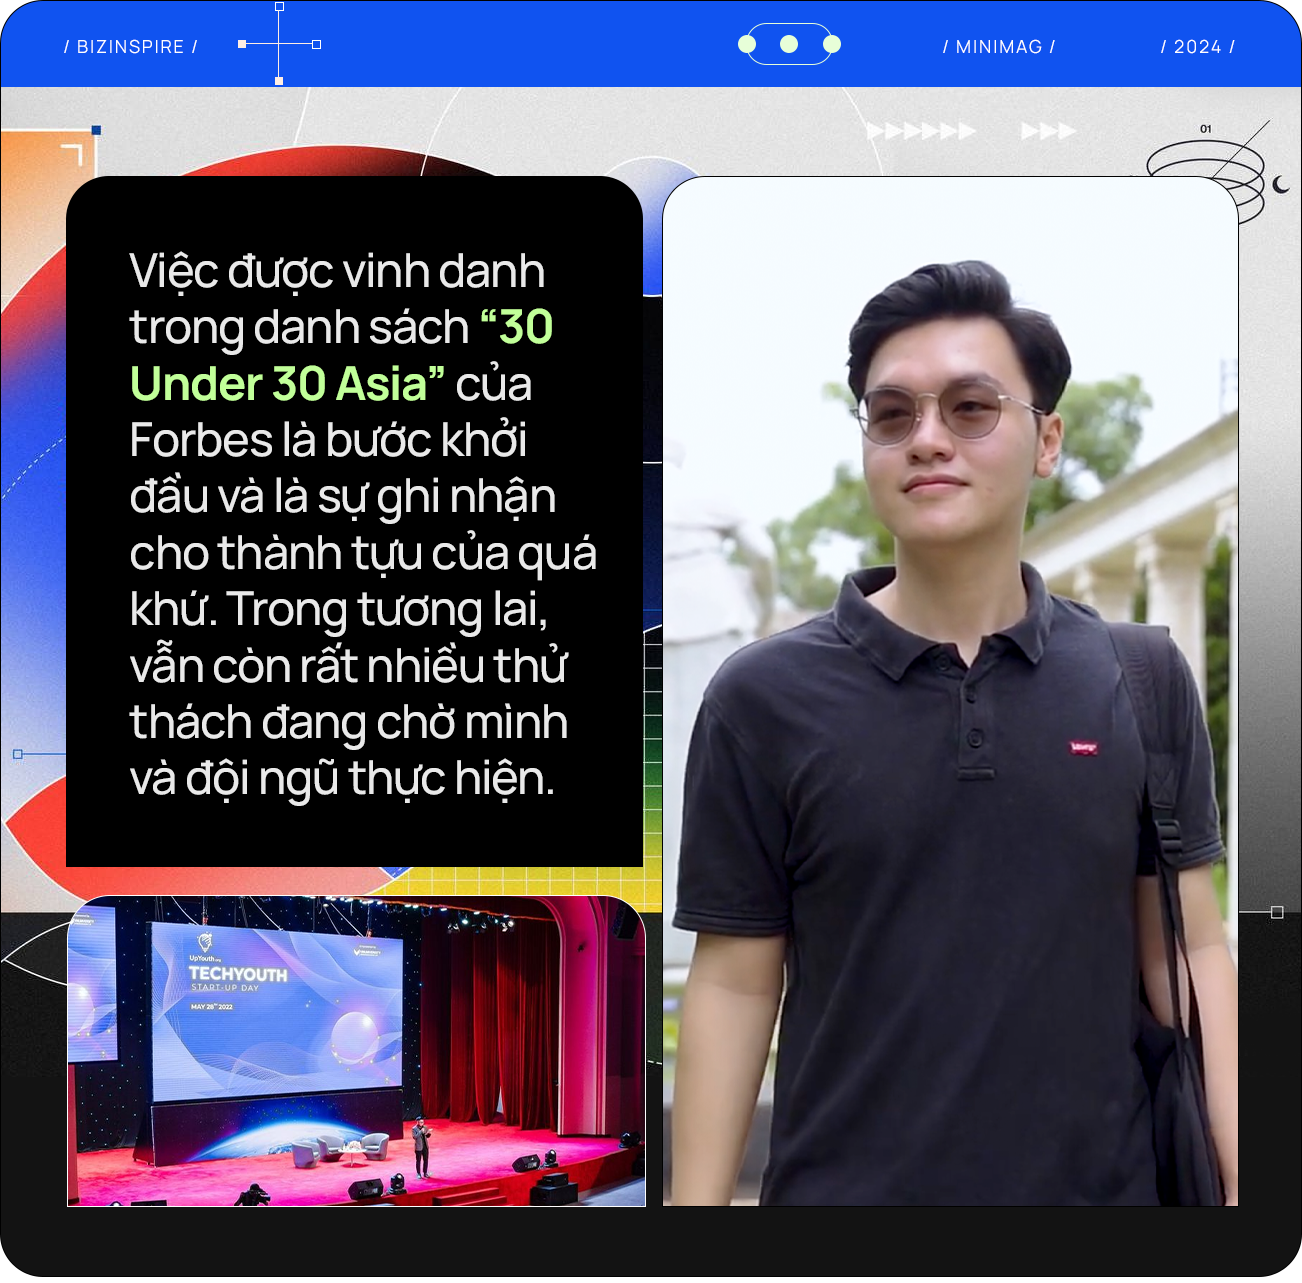 Trò chuyện với nam sinh Việt trẻ nhất trong lịch sử được Forbes vinh danh ‘30 Under 30 Asia’: Mơ người trẻ Việt có thể thay đổi thế giới như Mark Zuckerberg, Bill Gates- Ảnh 4.